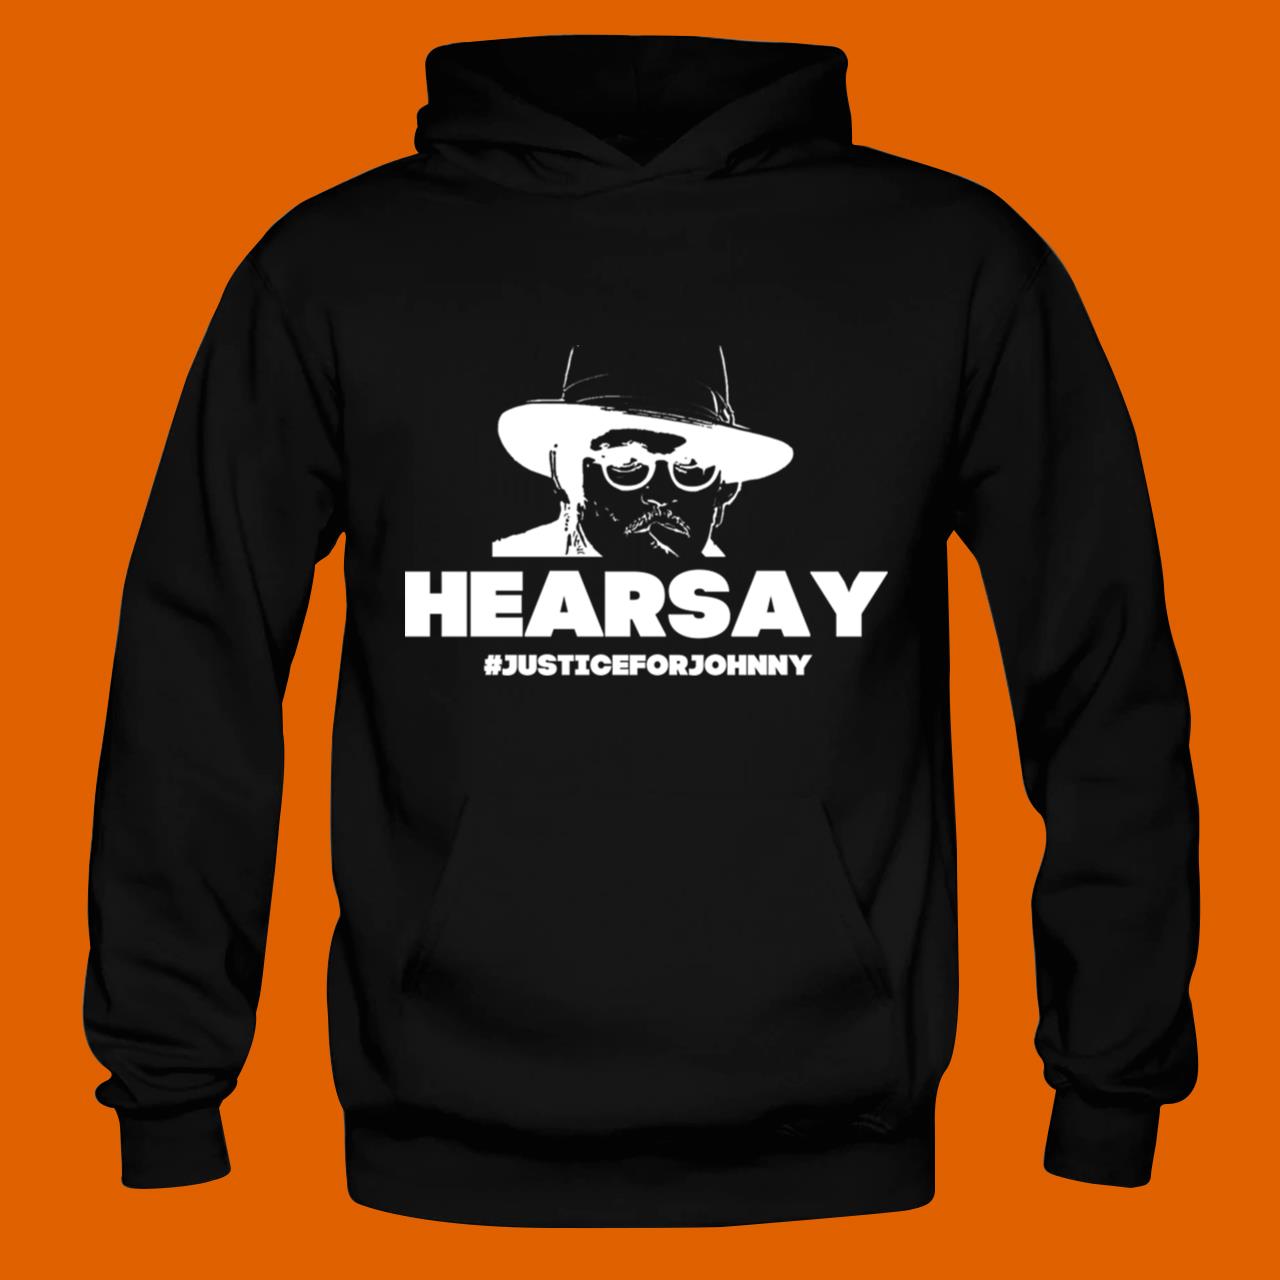 Hearsay – Johnny Depp Trial T-Shirt